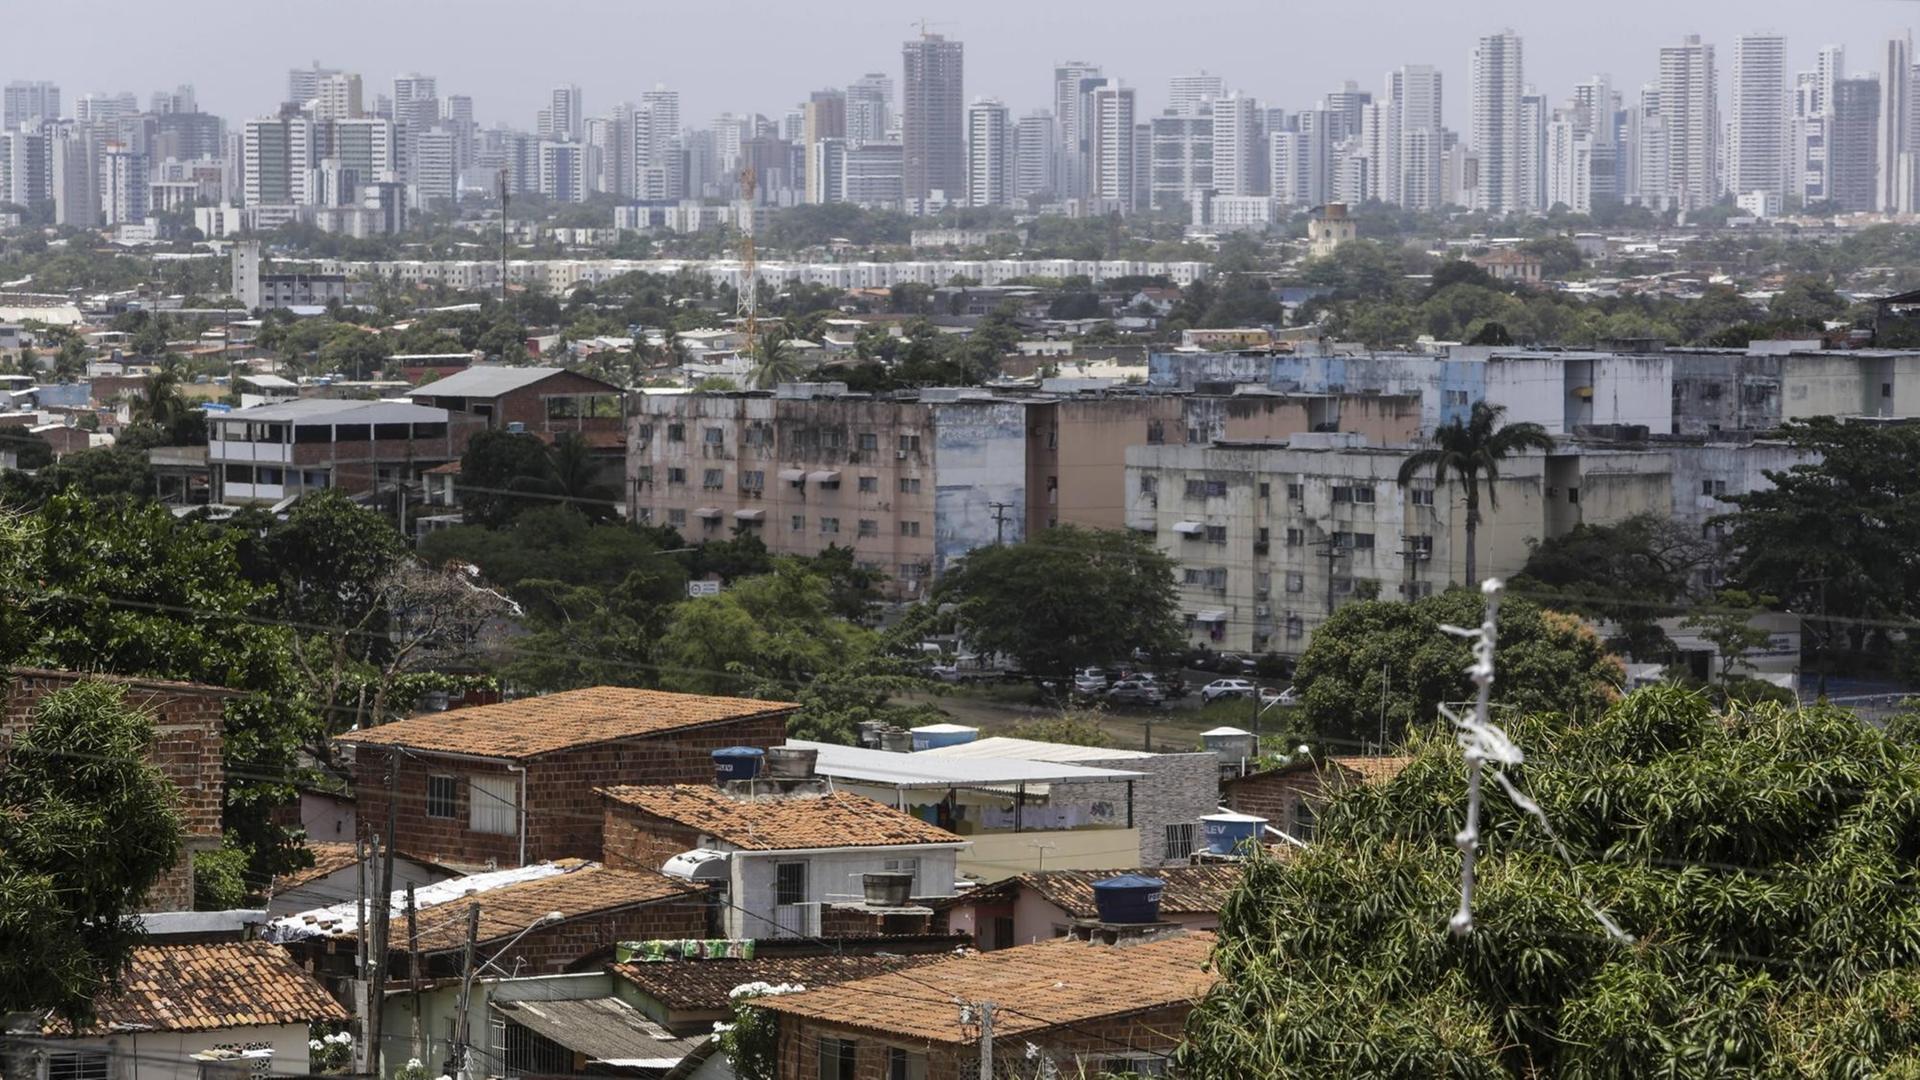 In vielen Städten Brasiliens ist der Unterschied zwischen Arm und Reich deutlich spürbar. Zu sehen ist ein Favela in der Stadt Olinda im Bundesstaat Pernambuco.